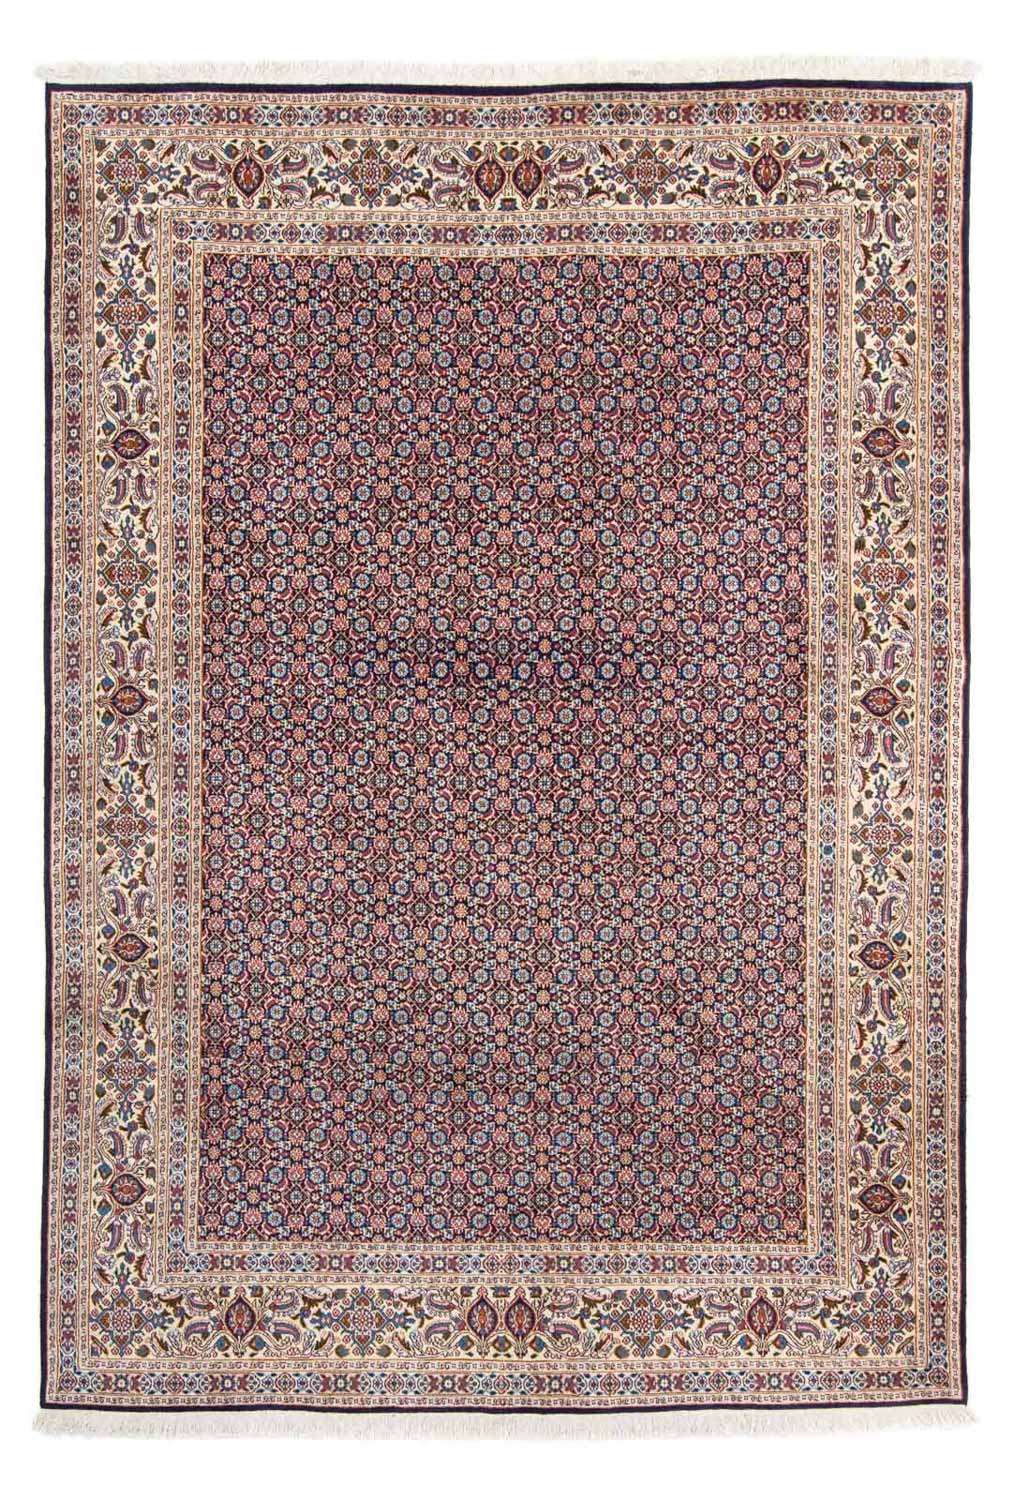 Perzisch tapijt - Klassiek - 298 x 202 cm - donkerblauw